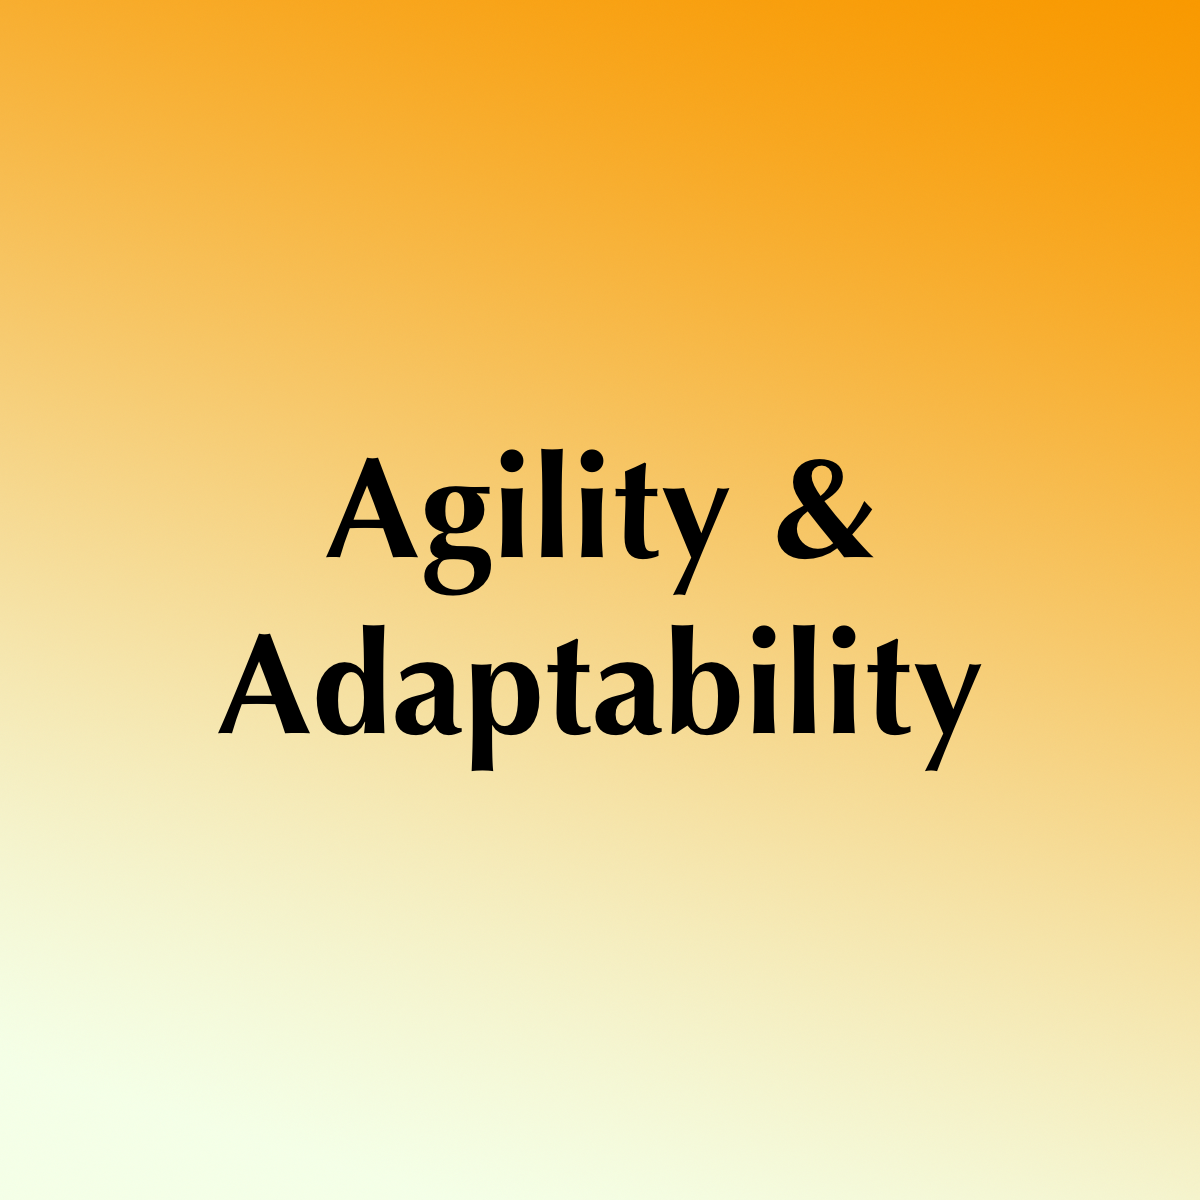 Agility and Adaptability